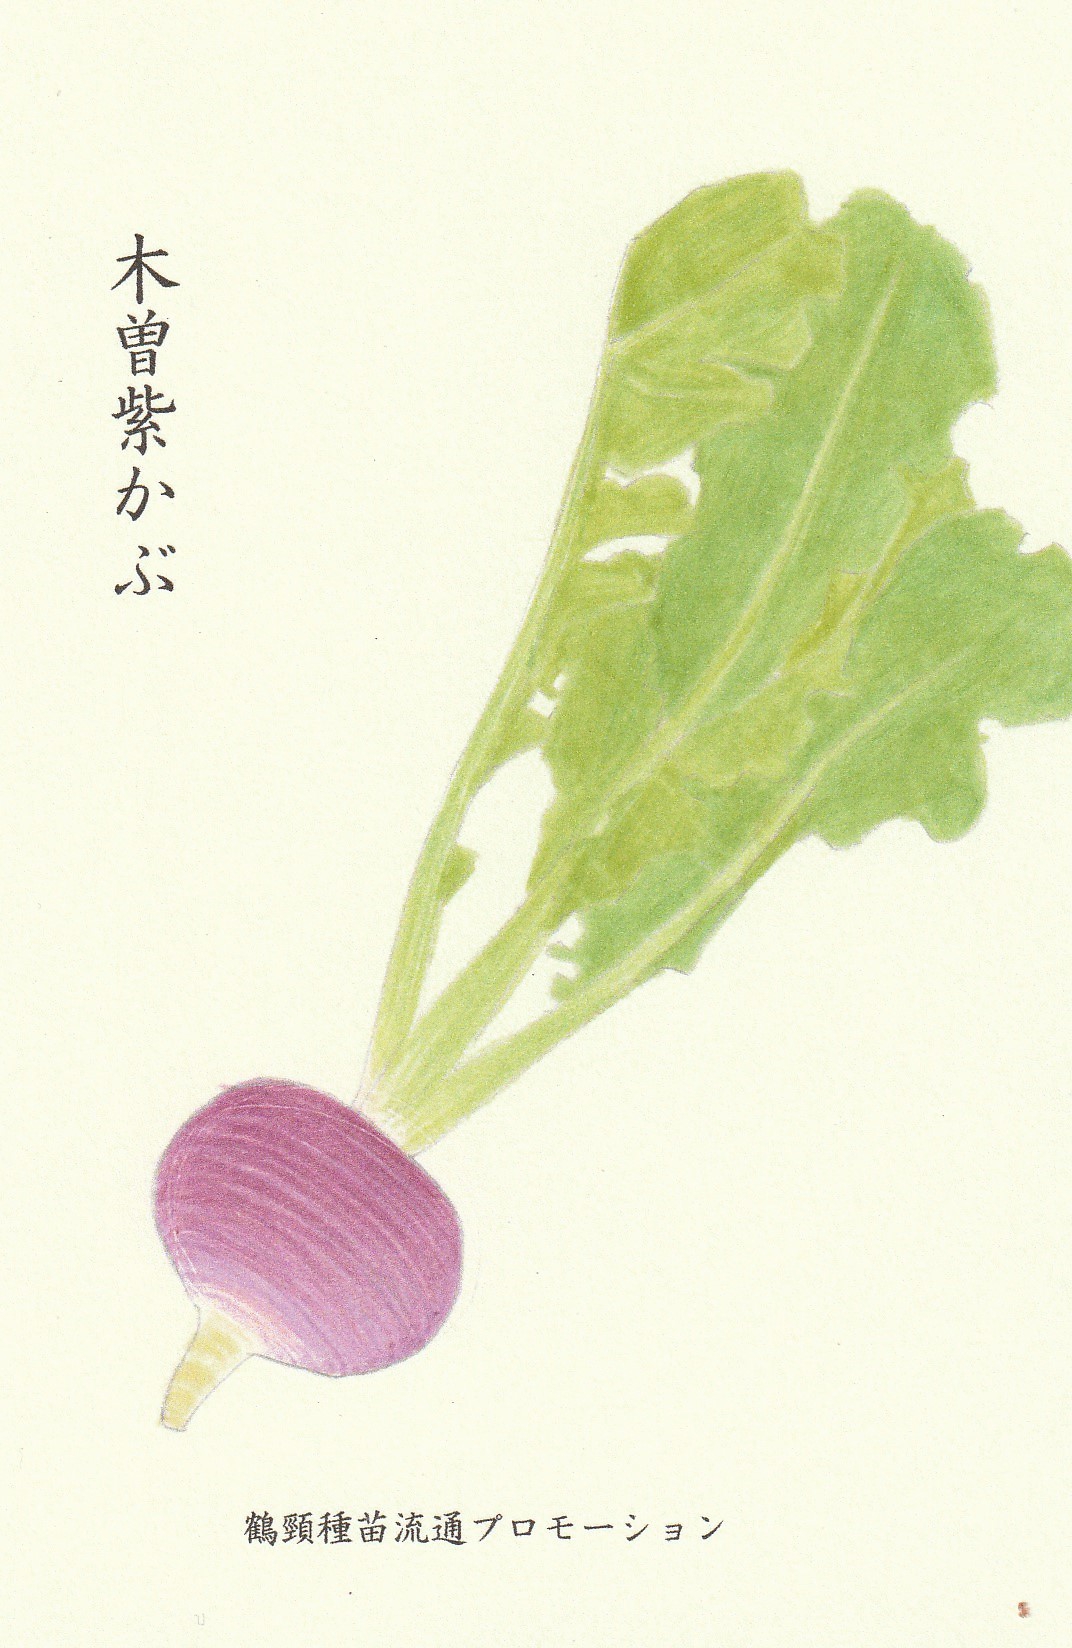 かぶ料理１２種類が信州産紫色のかぶ - 野菜